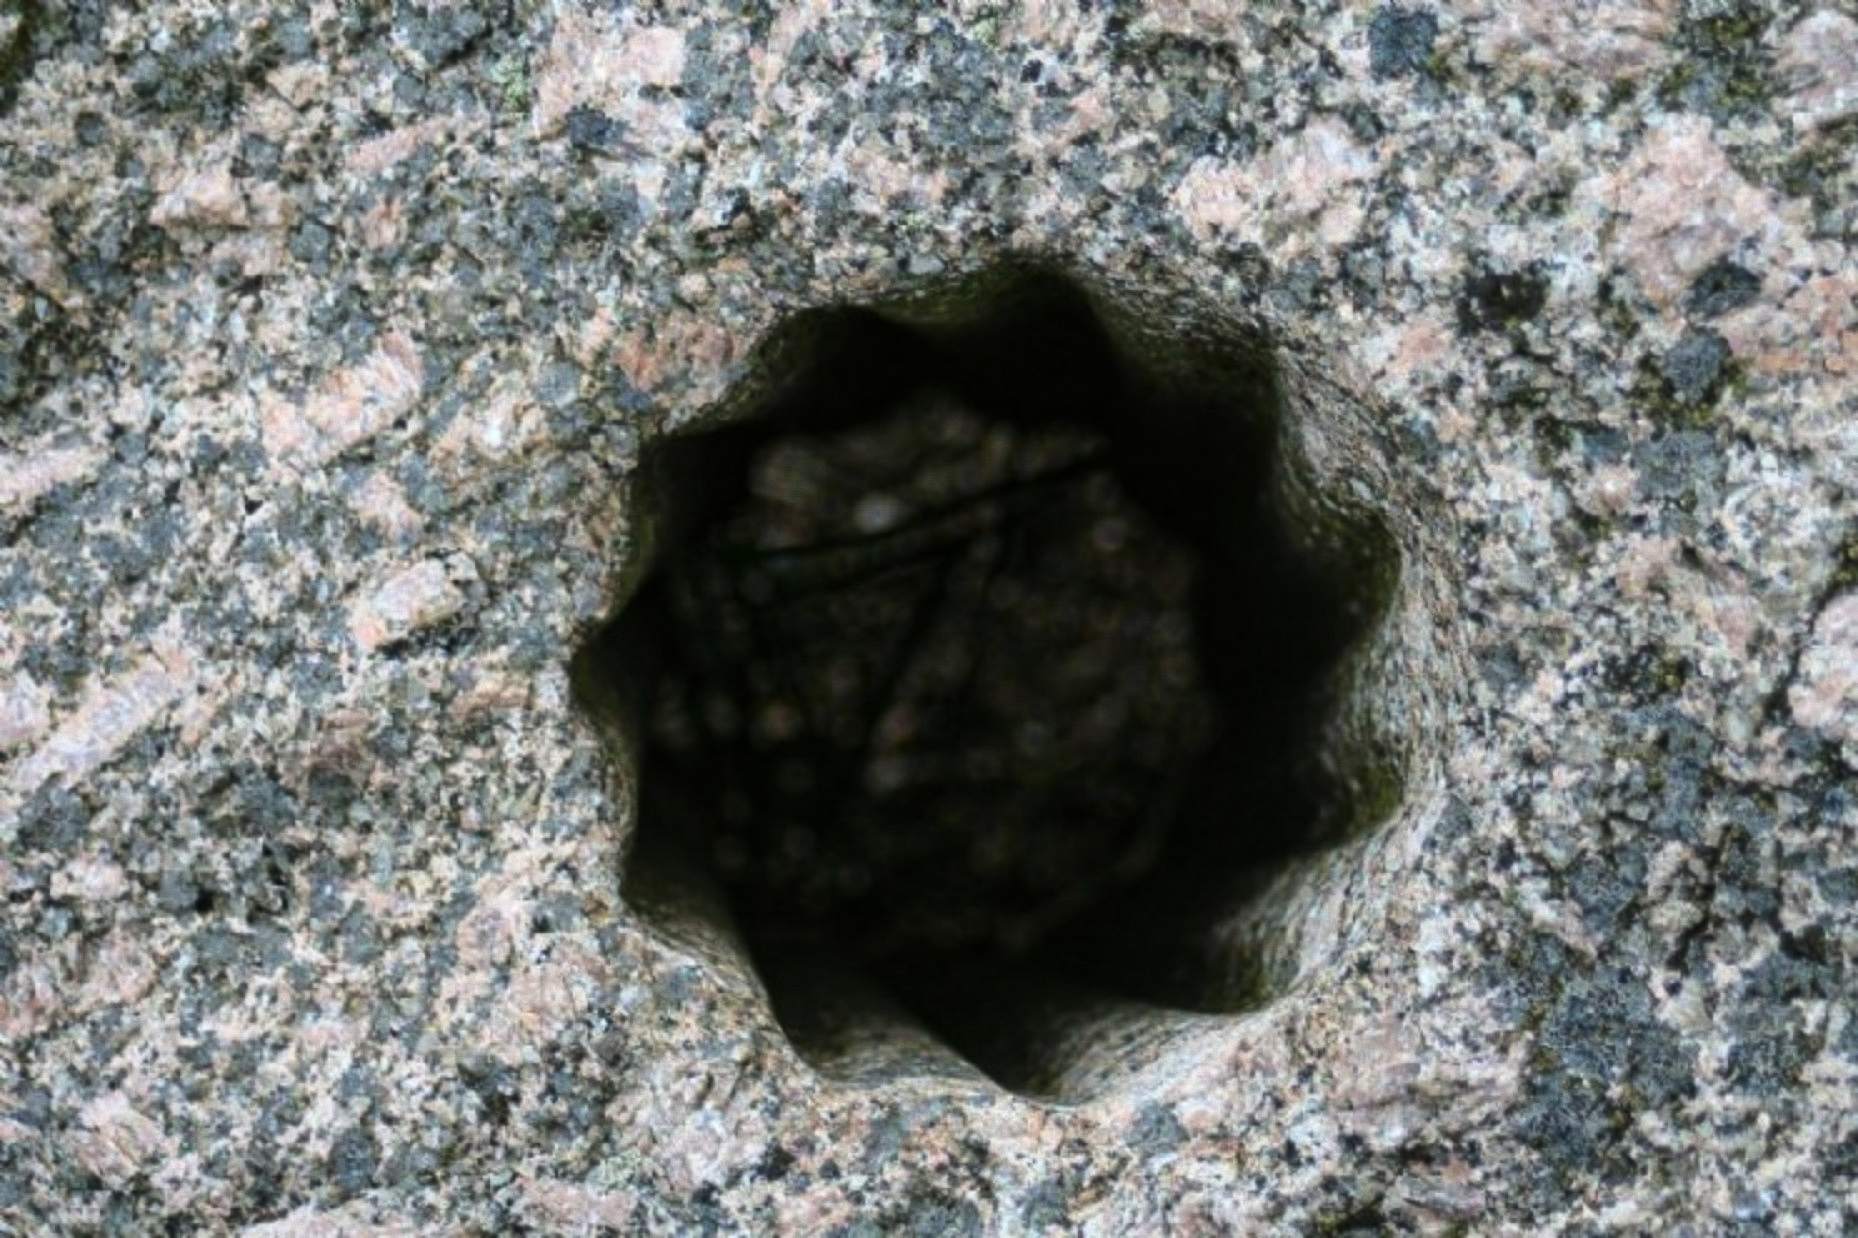 Estos extraños y antiguos agujeros en forma de estrella se encontraron tallados en piedra dura en Volda, Noruega, una ciudad que alguna vez fue el hogar de numerosos colonos nórdicos y que hoy figura como uno de los sitios más importantes para los arqueólogos en el país.